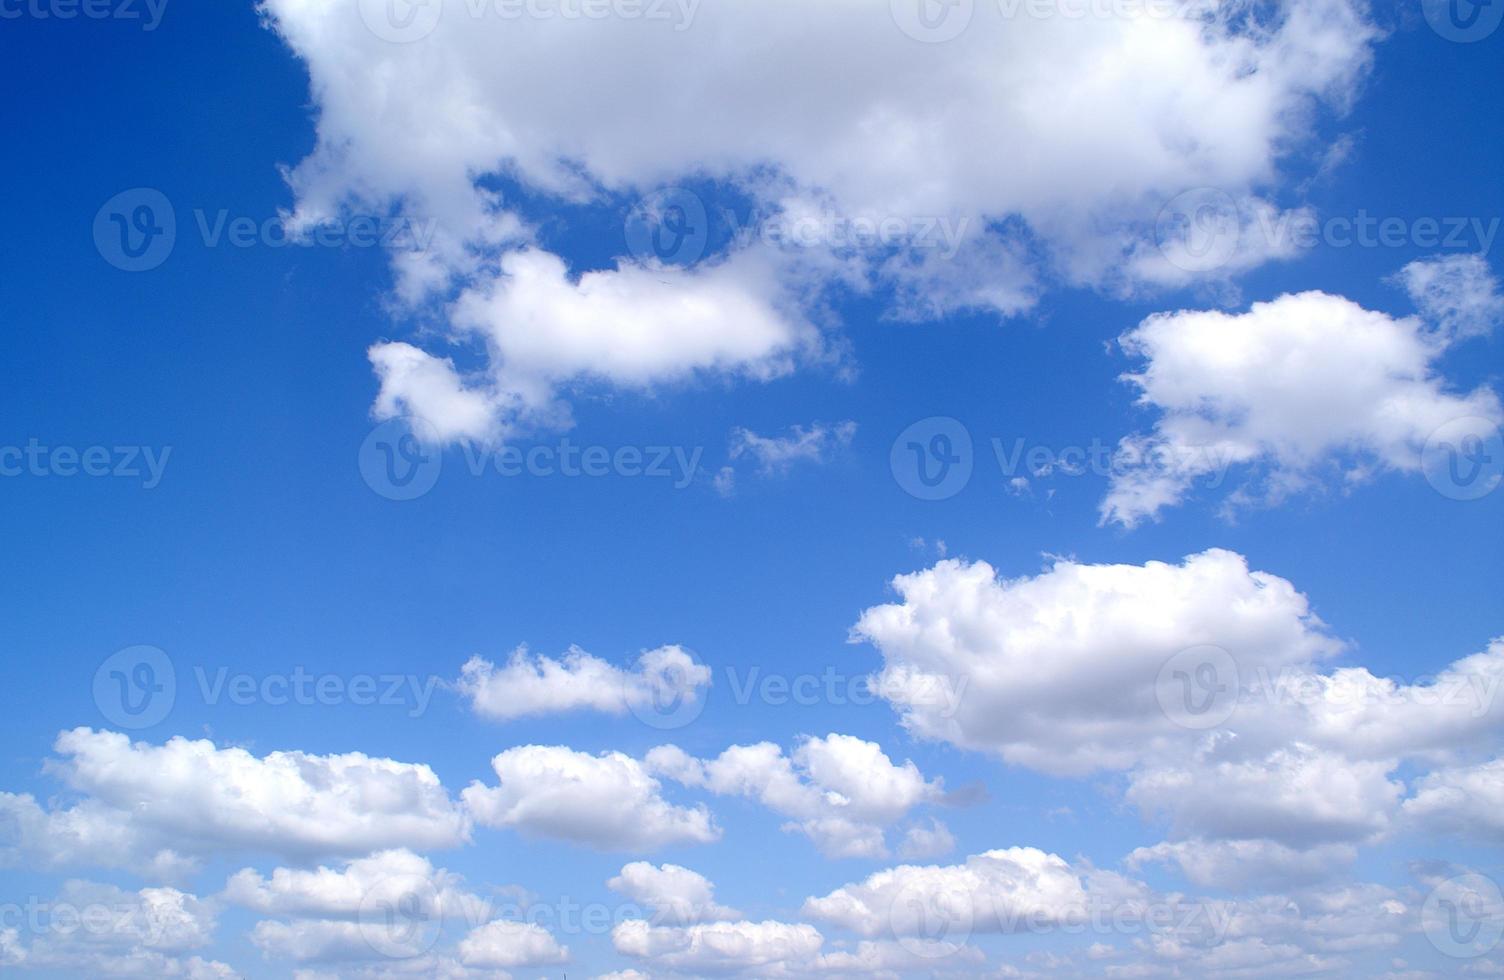 ljus solig dag, blå himmel med vita moln foto